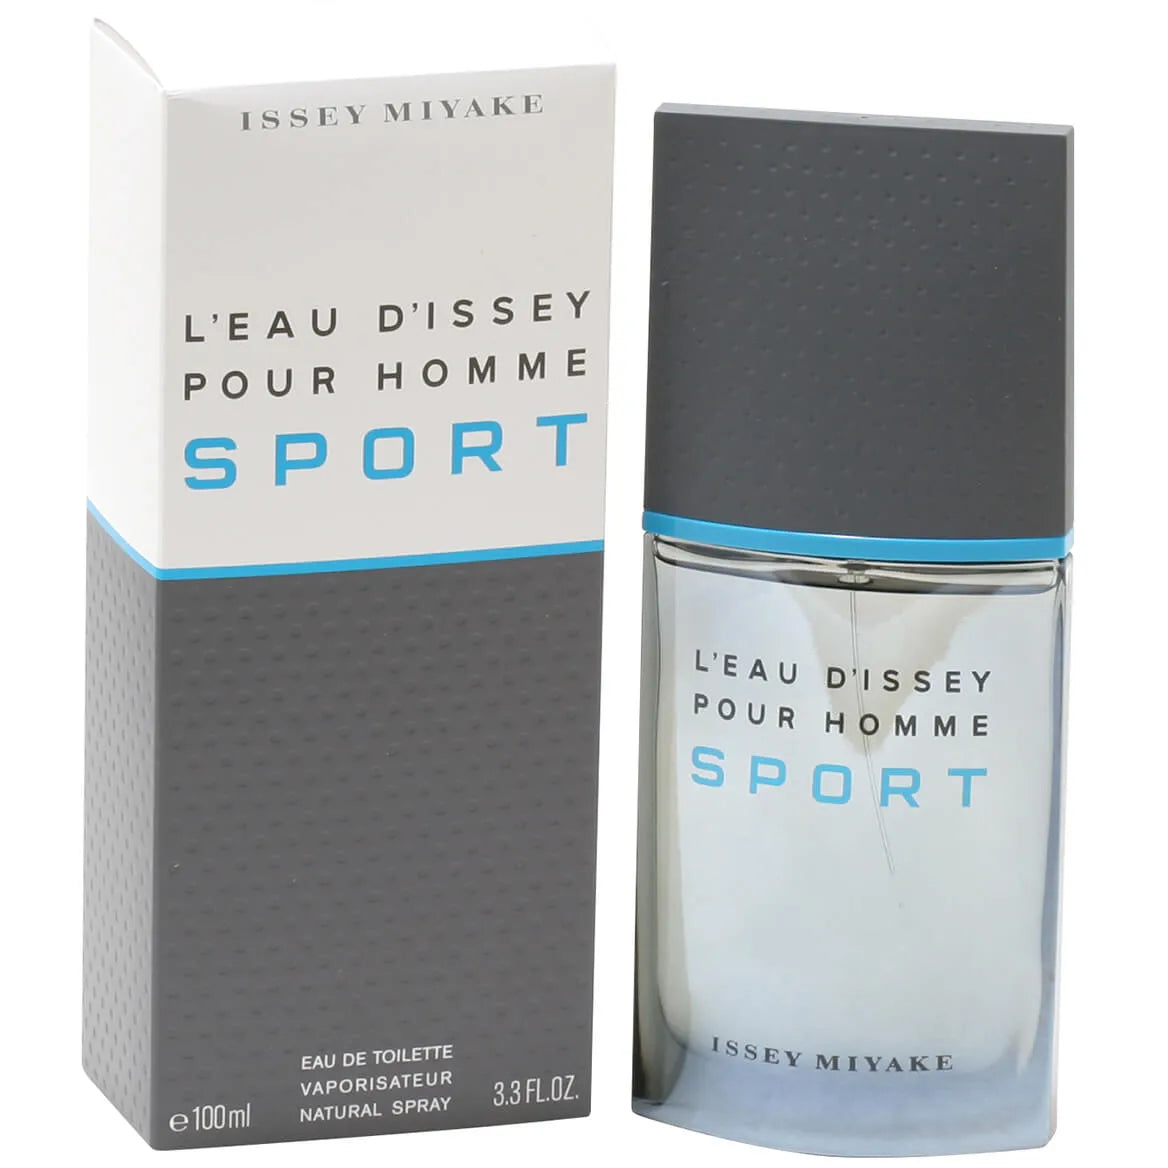 L'Eau D'Issey Pour Homme Sport by Issey Miyake Eau De Toilette Spray for Men - 3.3 fl oz bottle